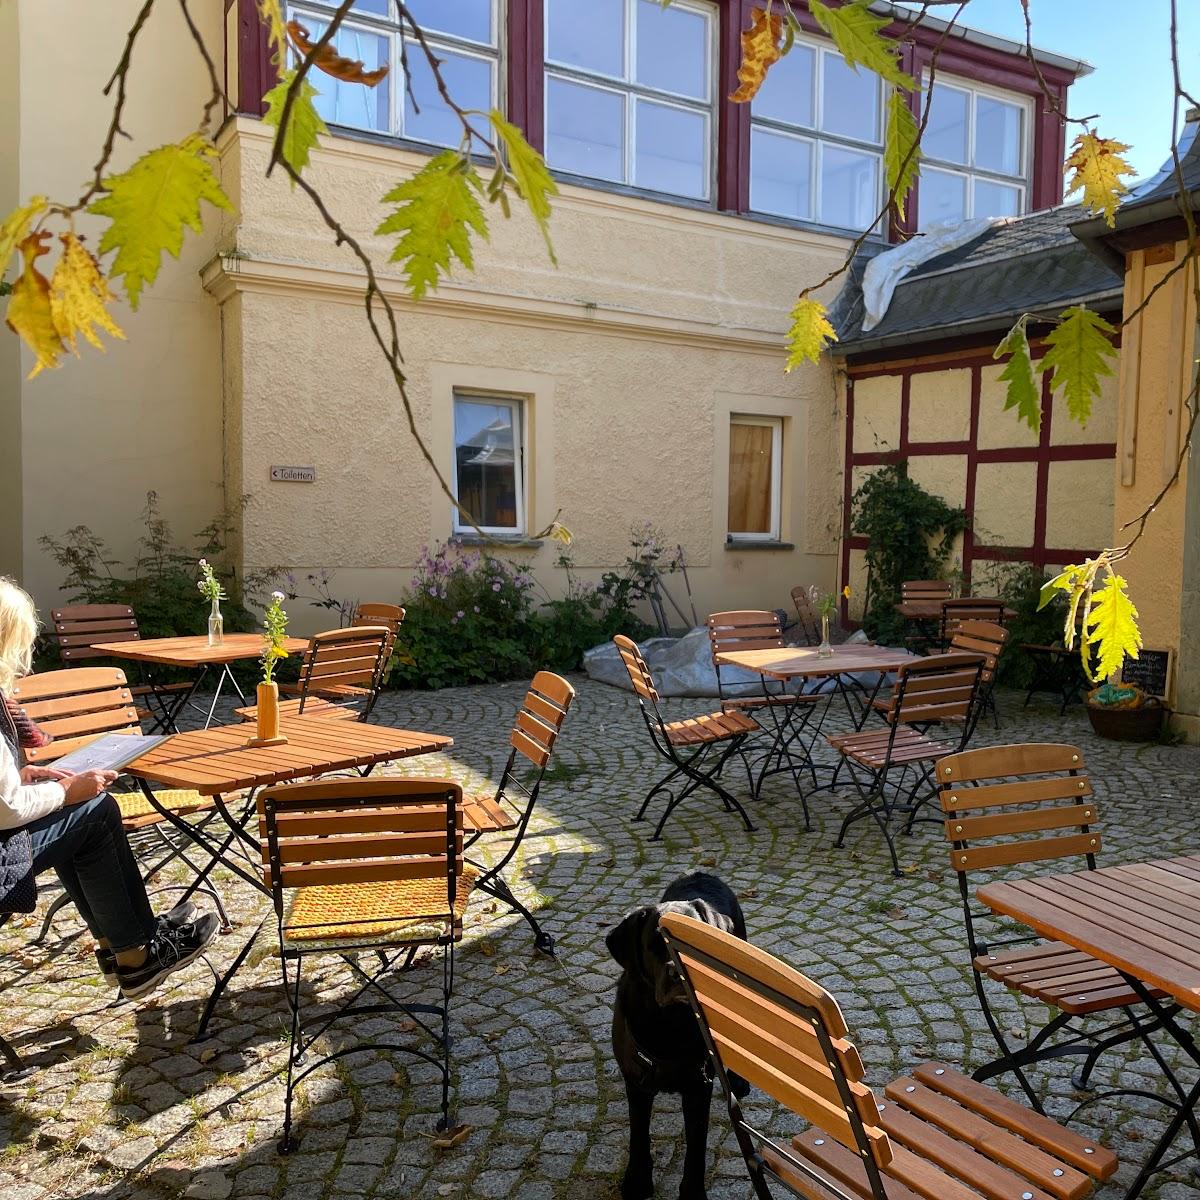 Restaurant "Schlosscafe" in Tonndorf